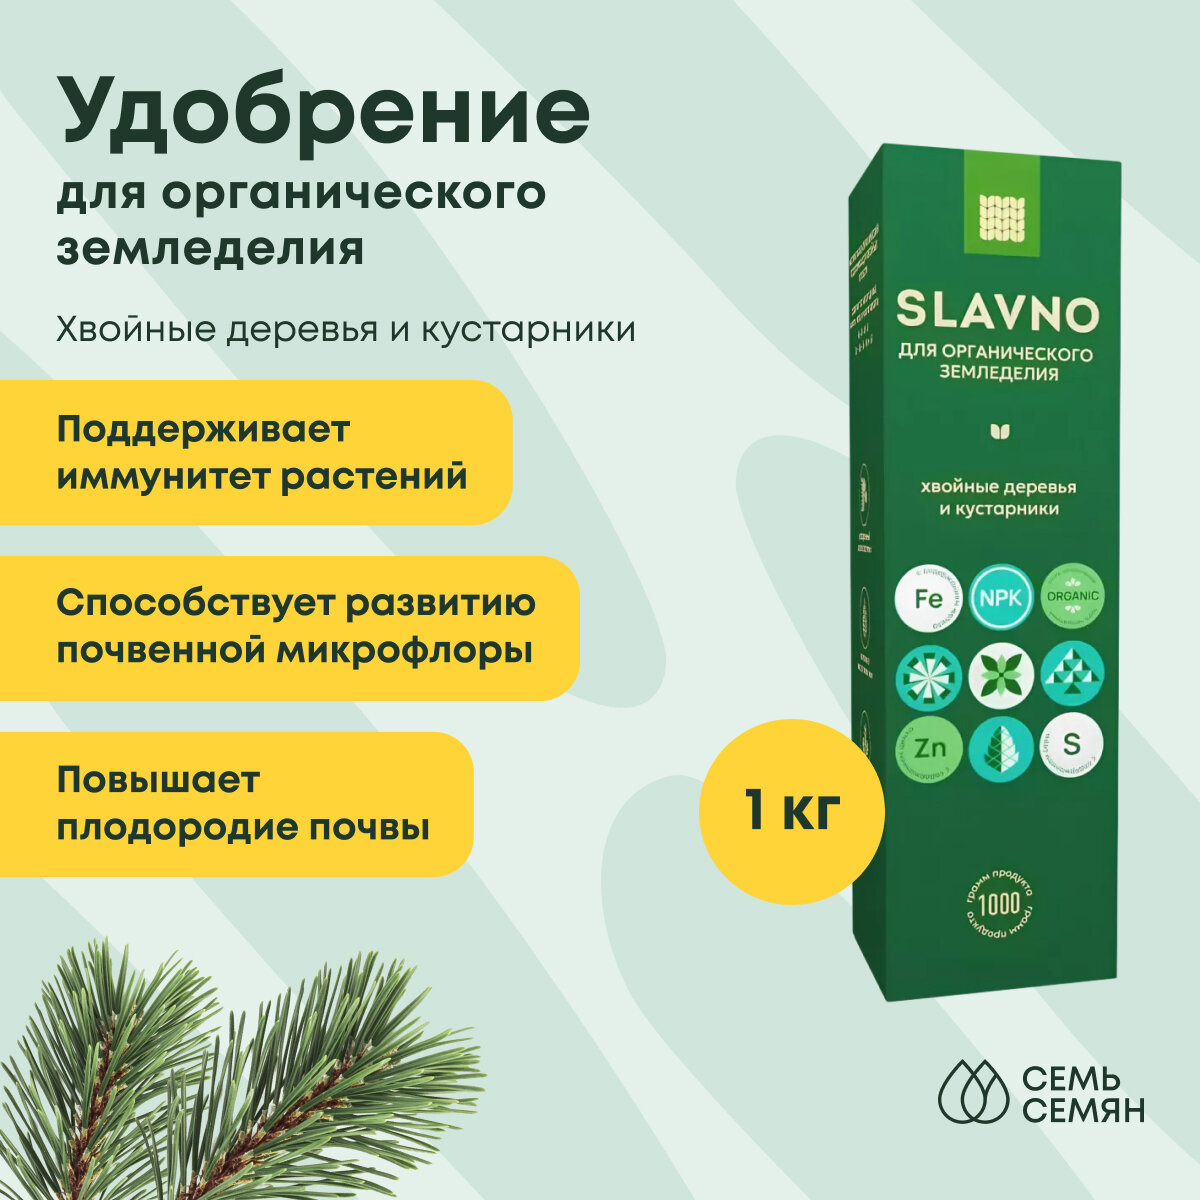 Удобрение "Slavno" для органического земледелия Хвойные деревья и кустарники 1кг